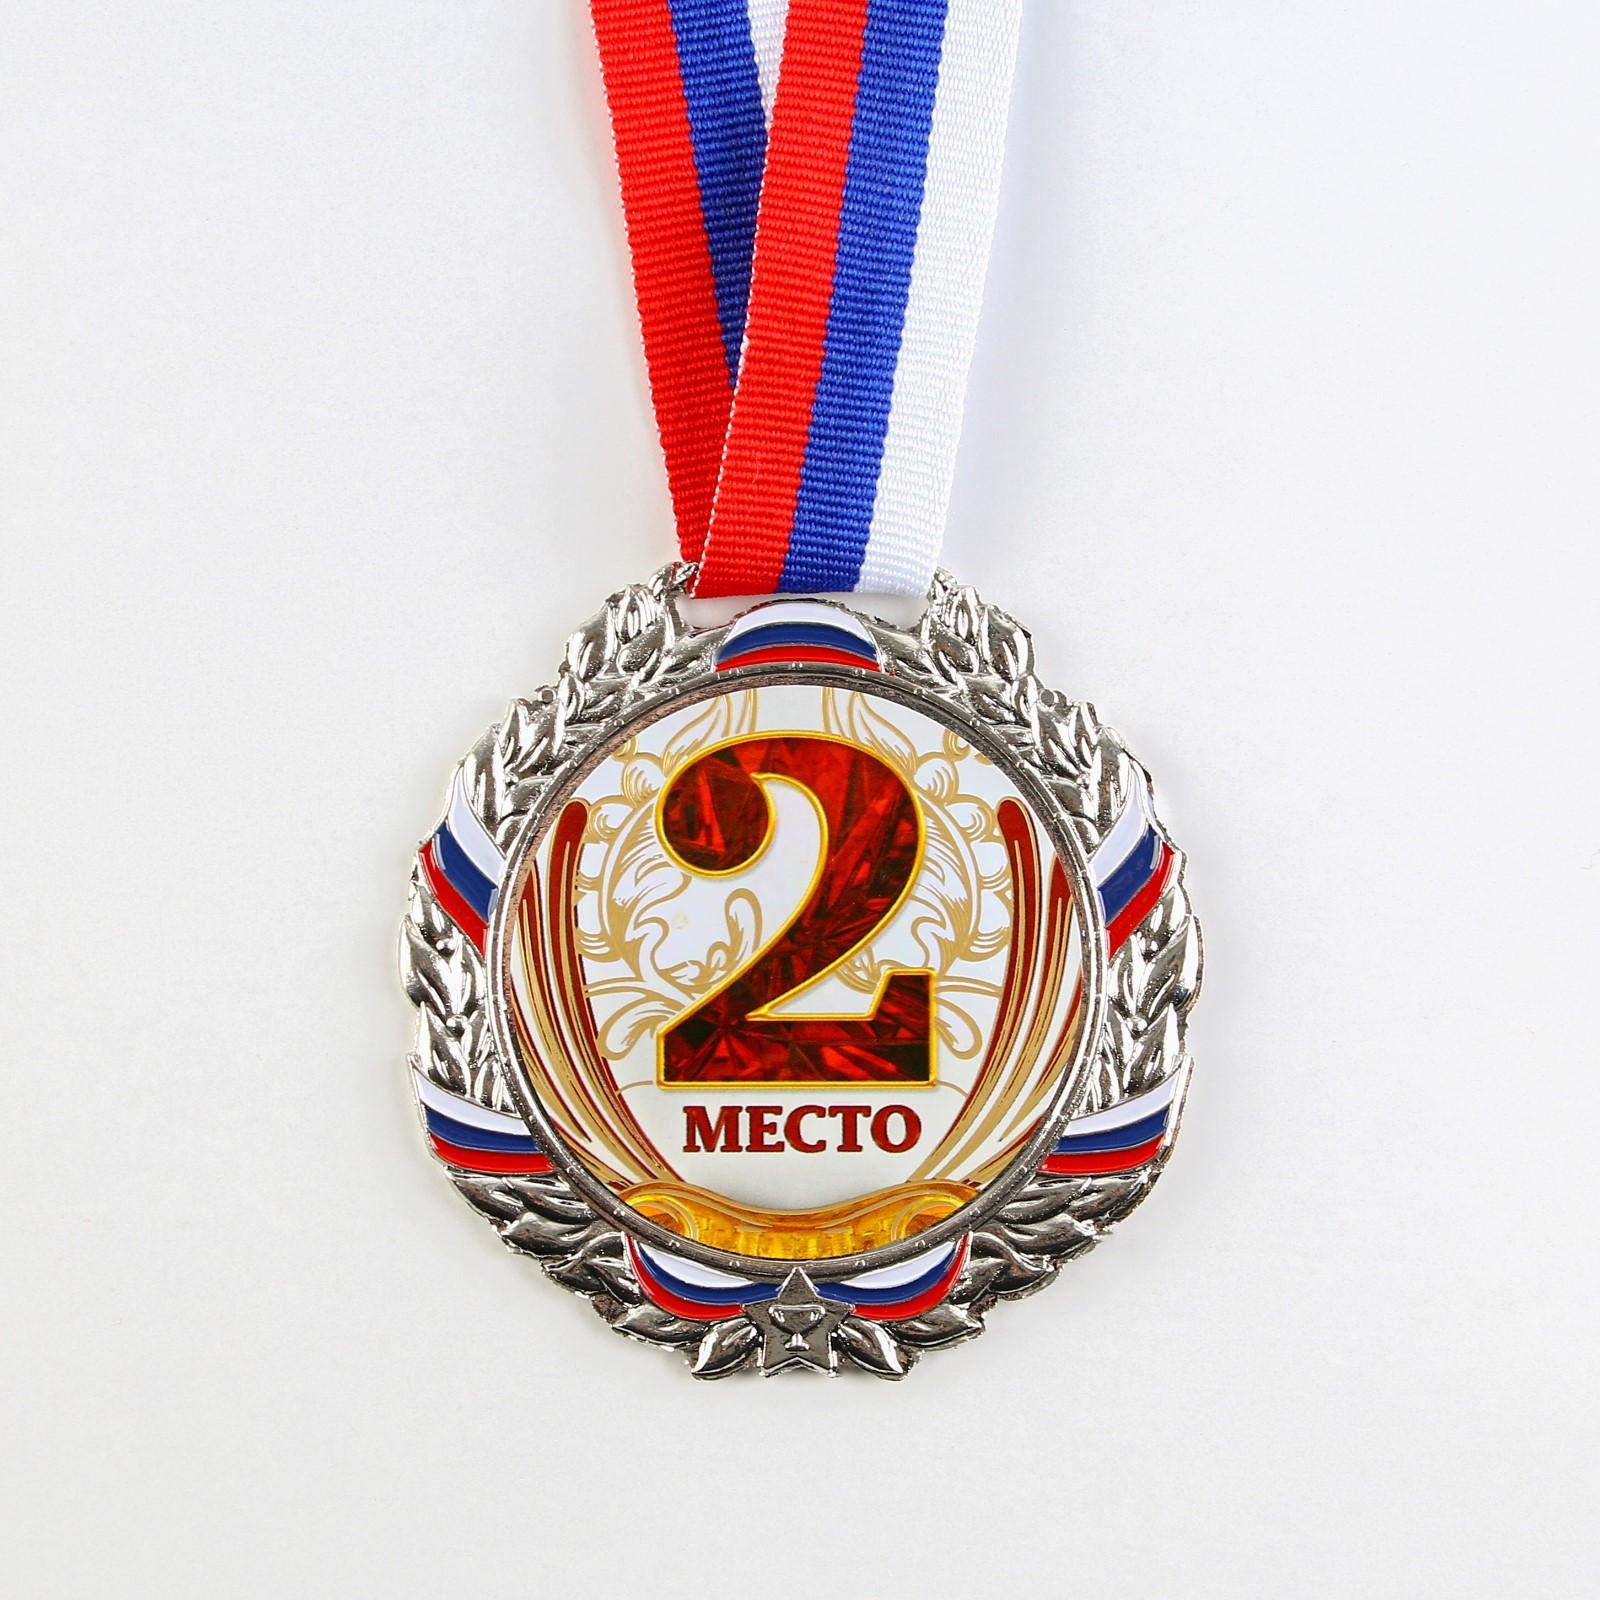 Медаль призовая 075 диам. 6,5 см. 2 место, триколор, 9441044